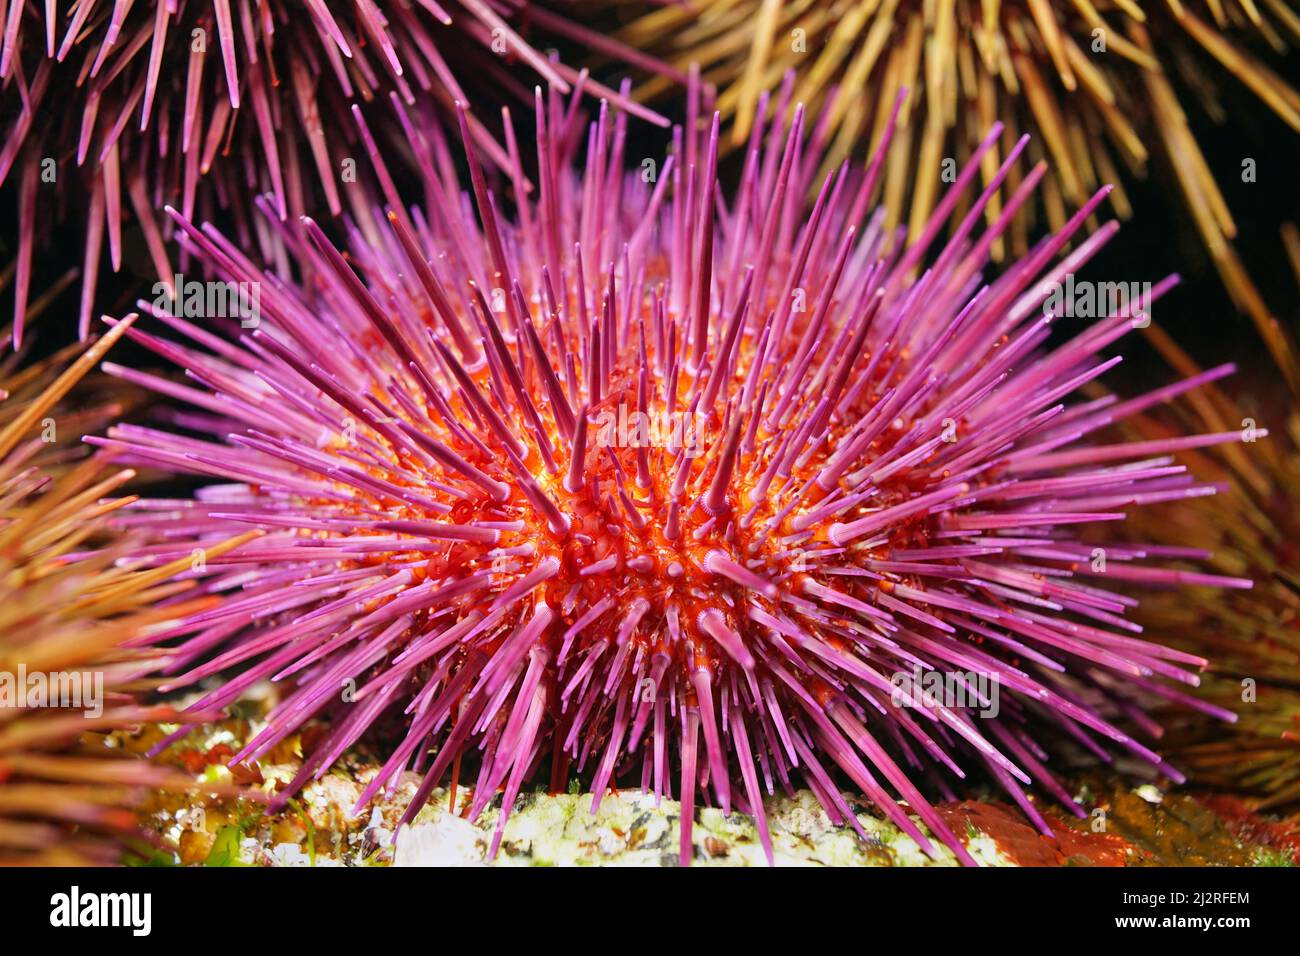 Purple sea urchin Paracentrotus lividus close up, underwater in the Atlantic ocean, Spain Stock Photo